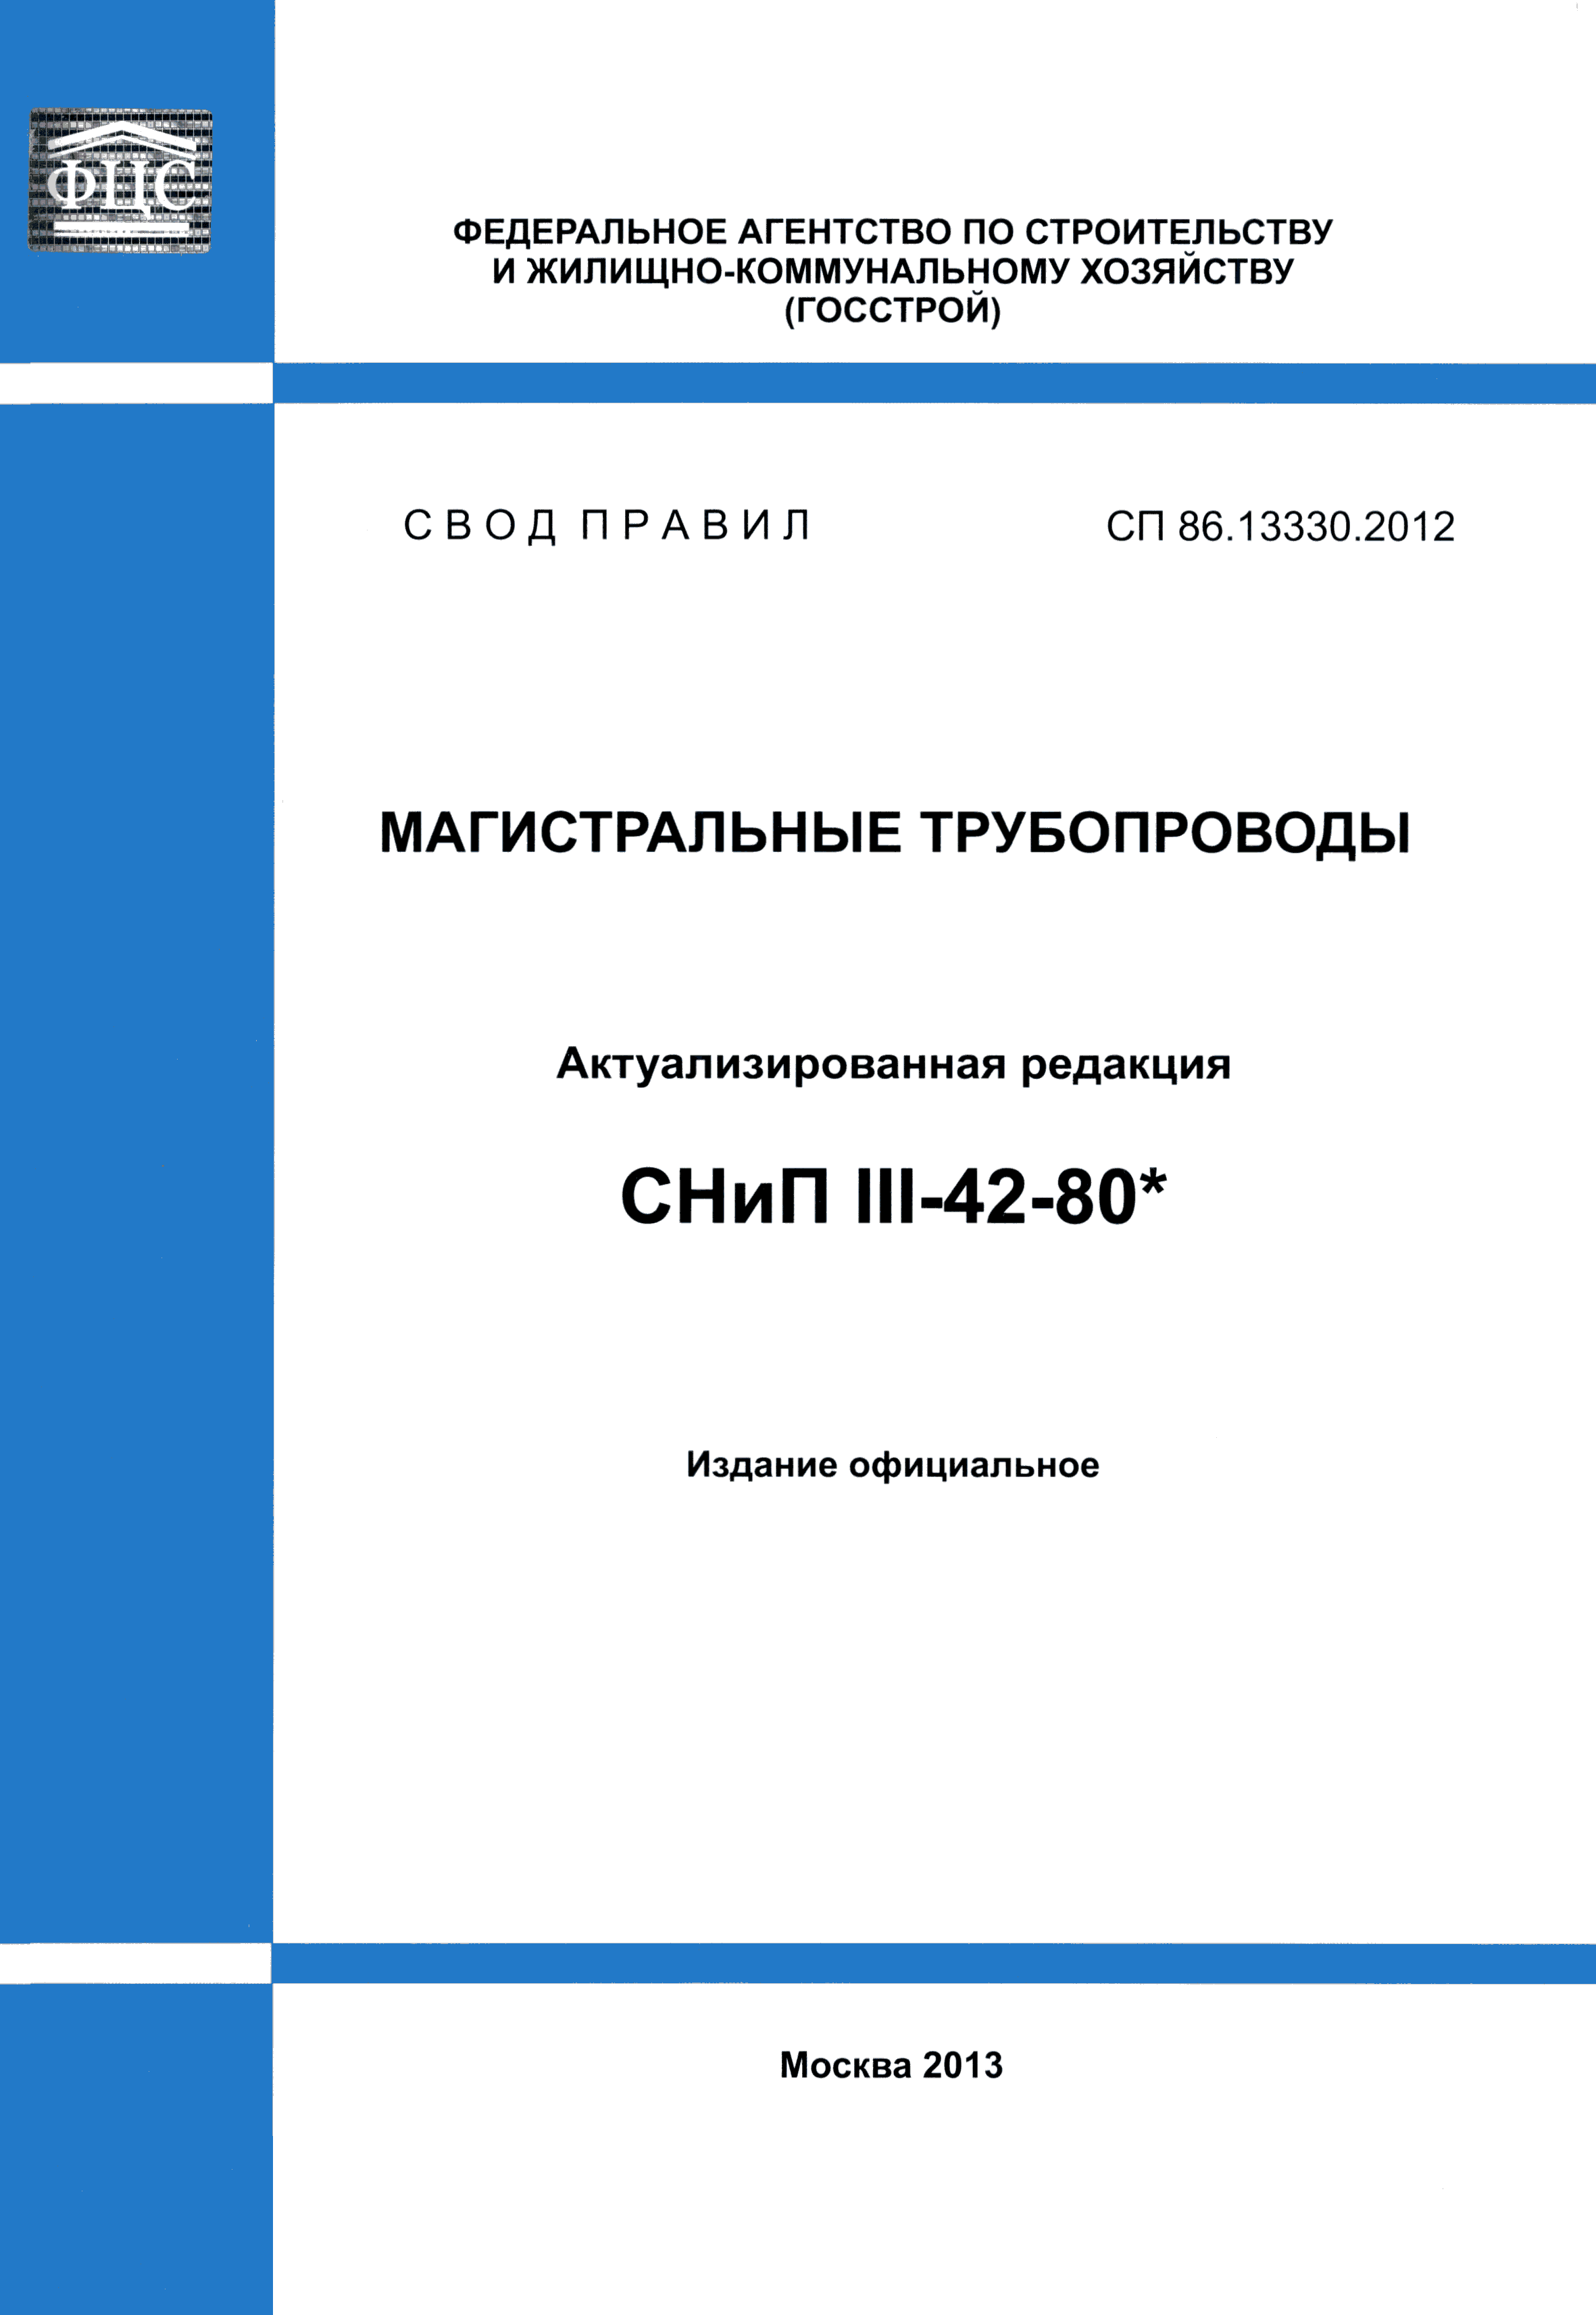 СП 86.13330.2012